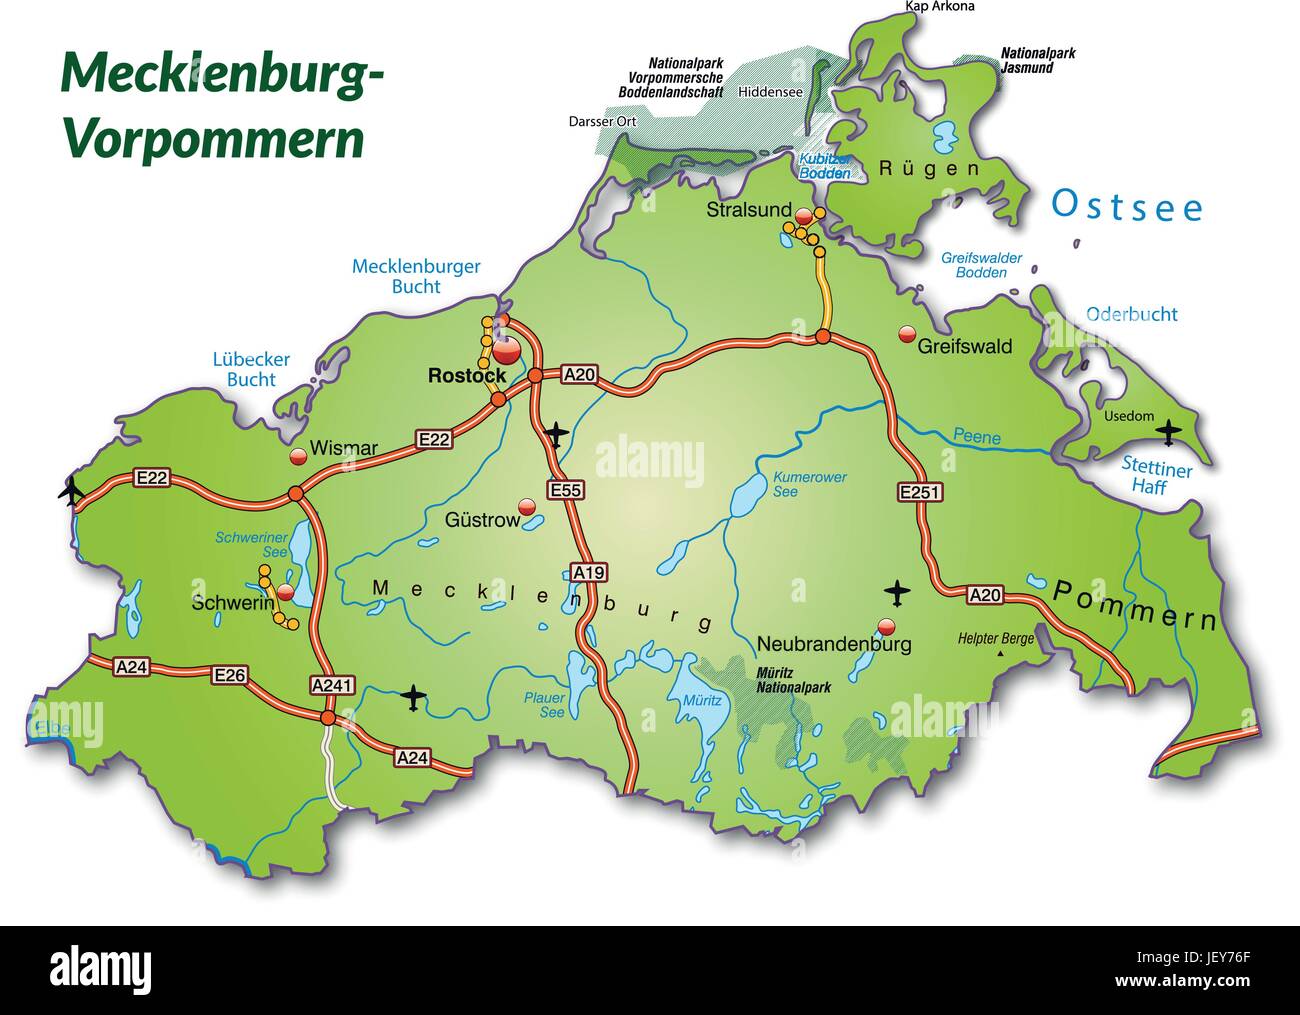 Verkehr, Transport, Autobahn, Autobahn, Mecklenburg, Karte, westlichen, Staat, Stock Vektor